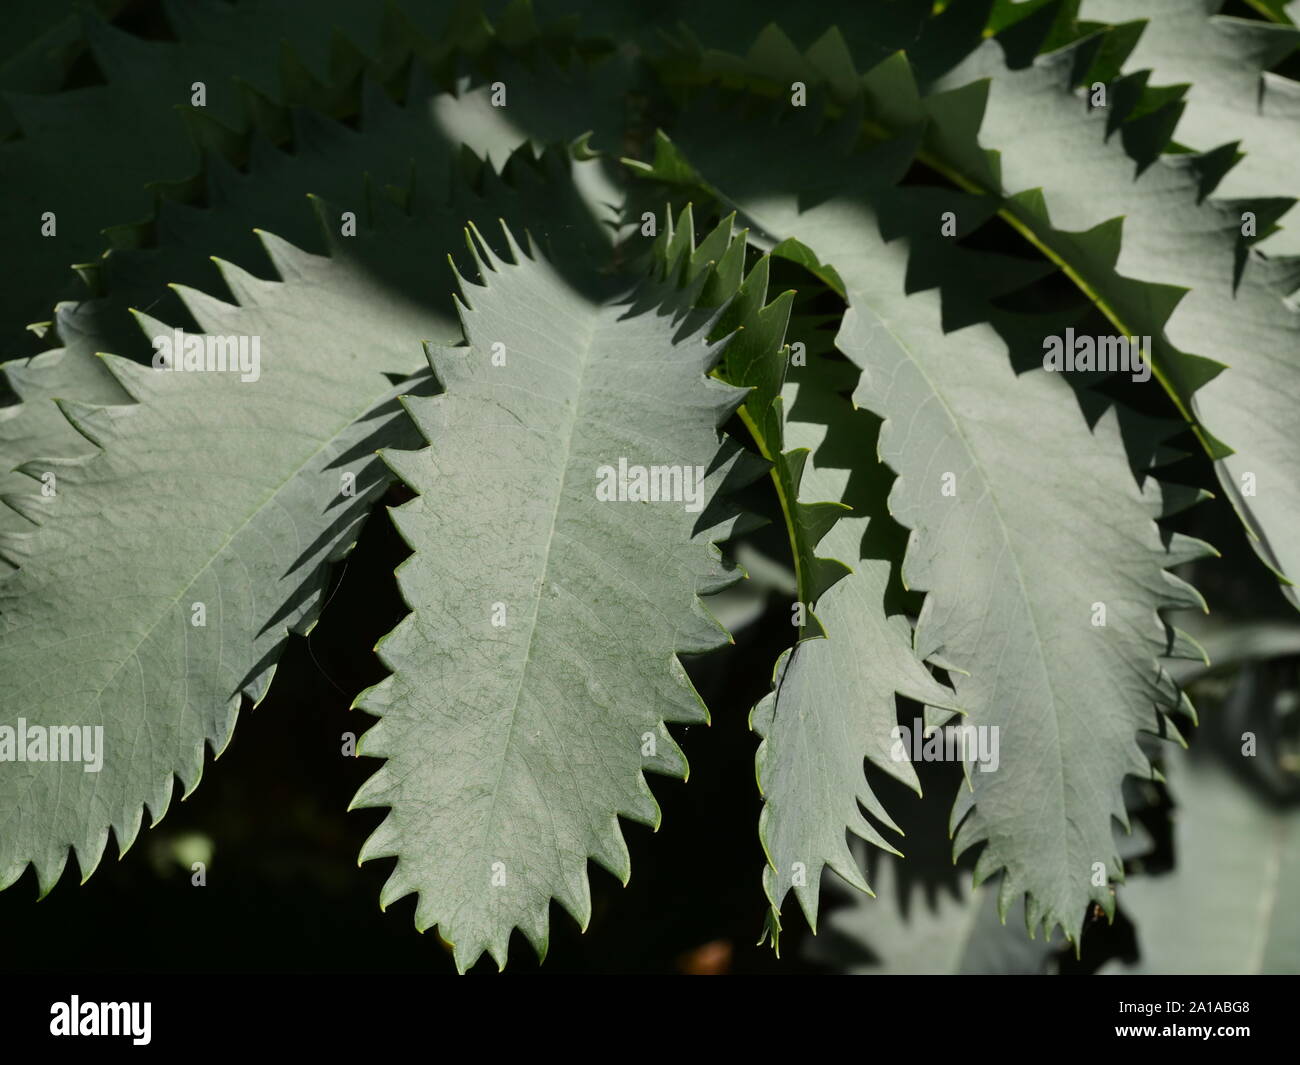 Melianthus major, Honey shrub, close up of leaves Stock Photo